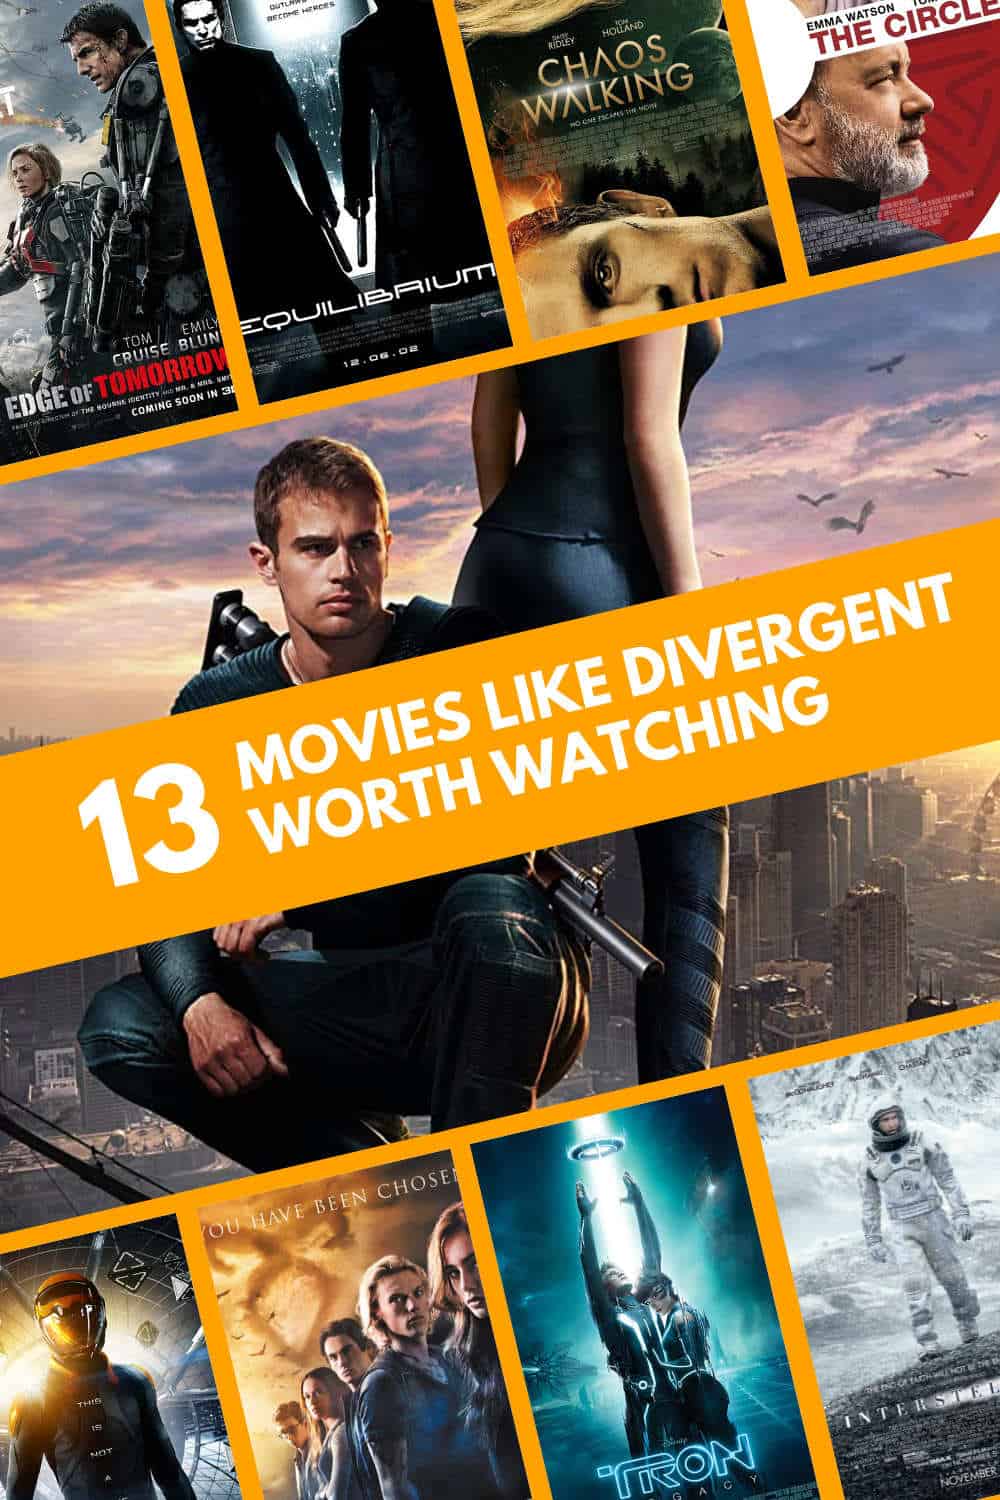 Movie Like Divergent Worth Watching